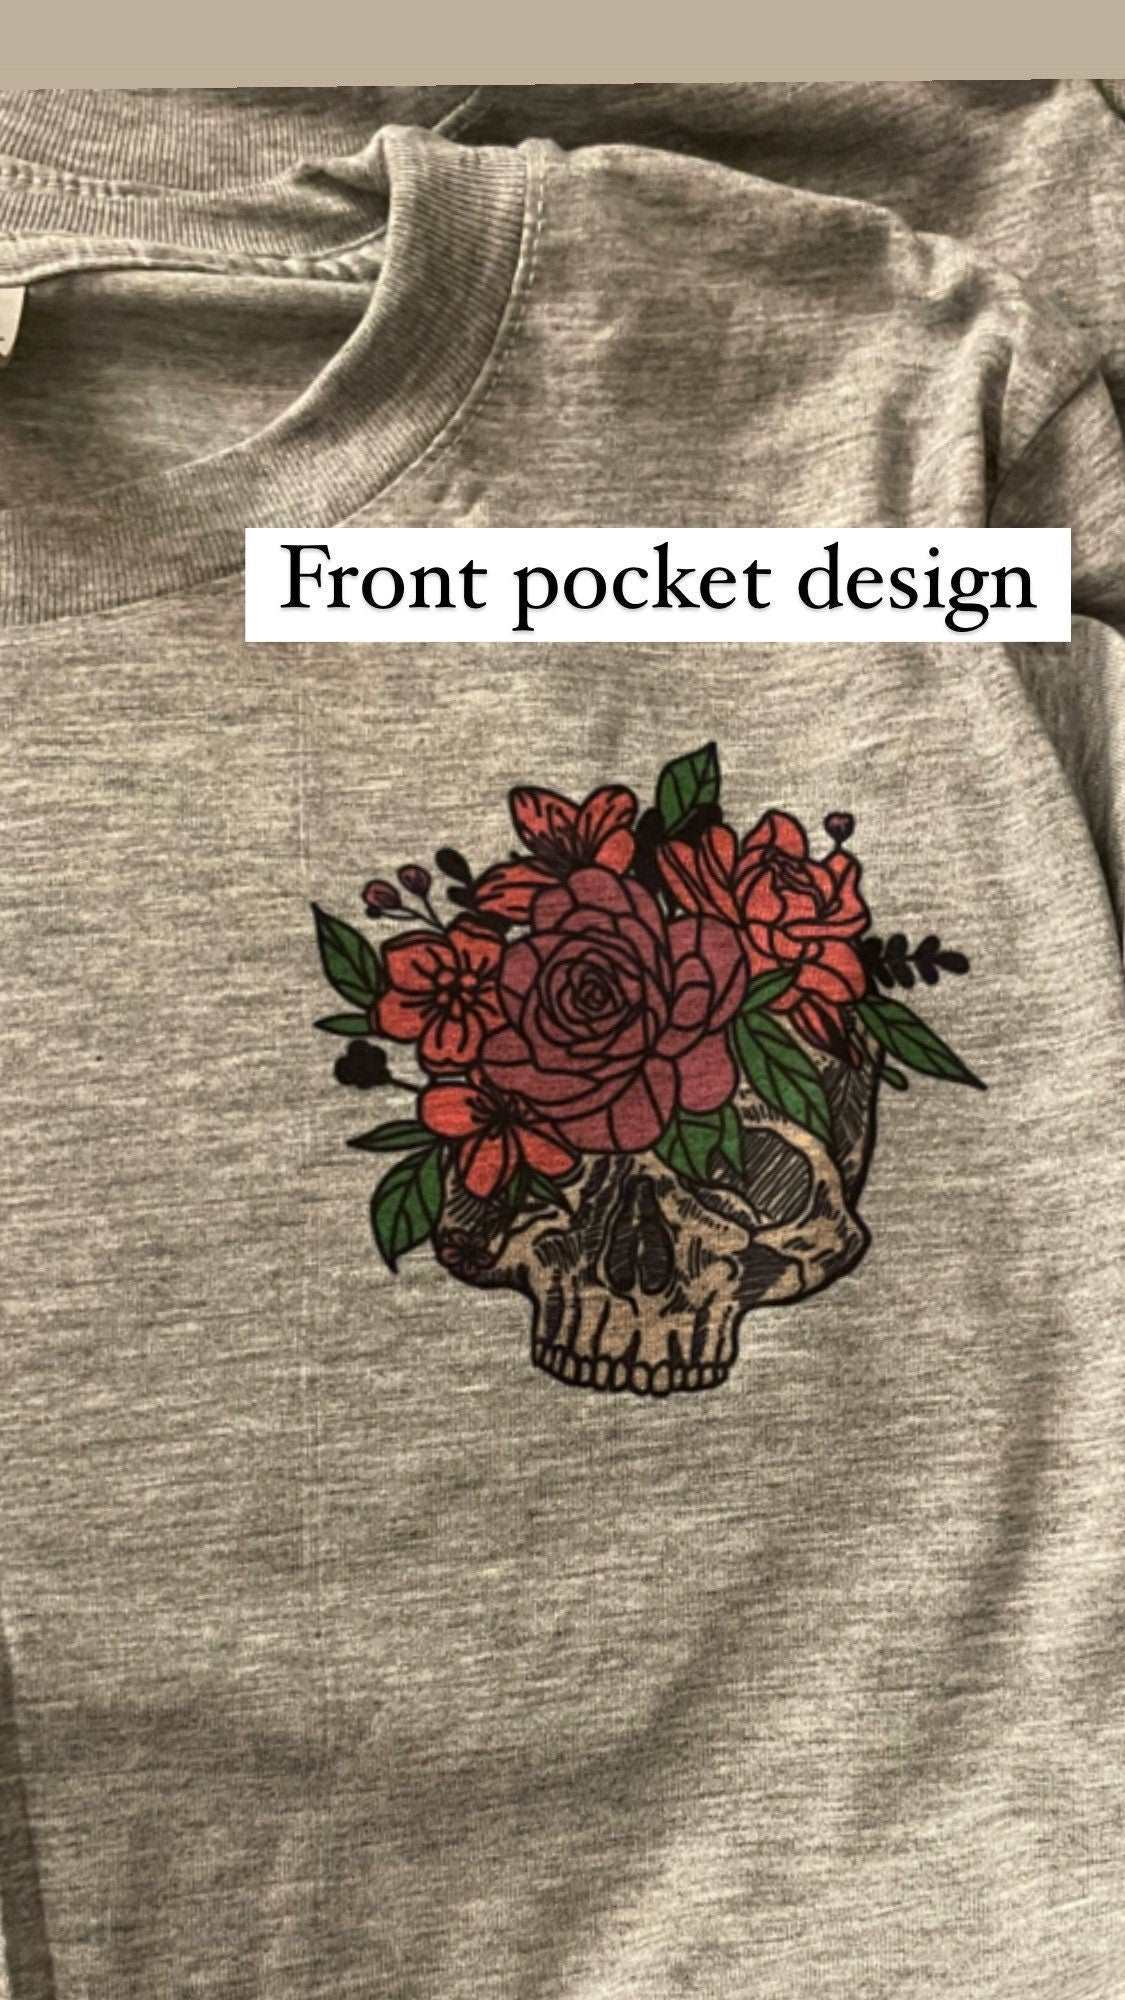 Brave skeleton floral shirt, mental health shirt